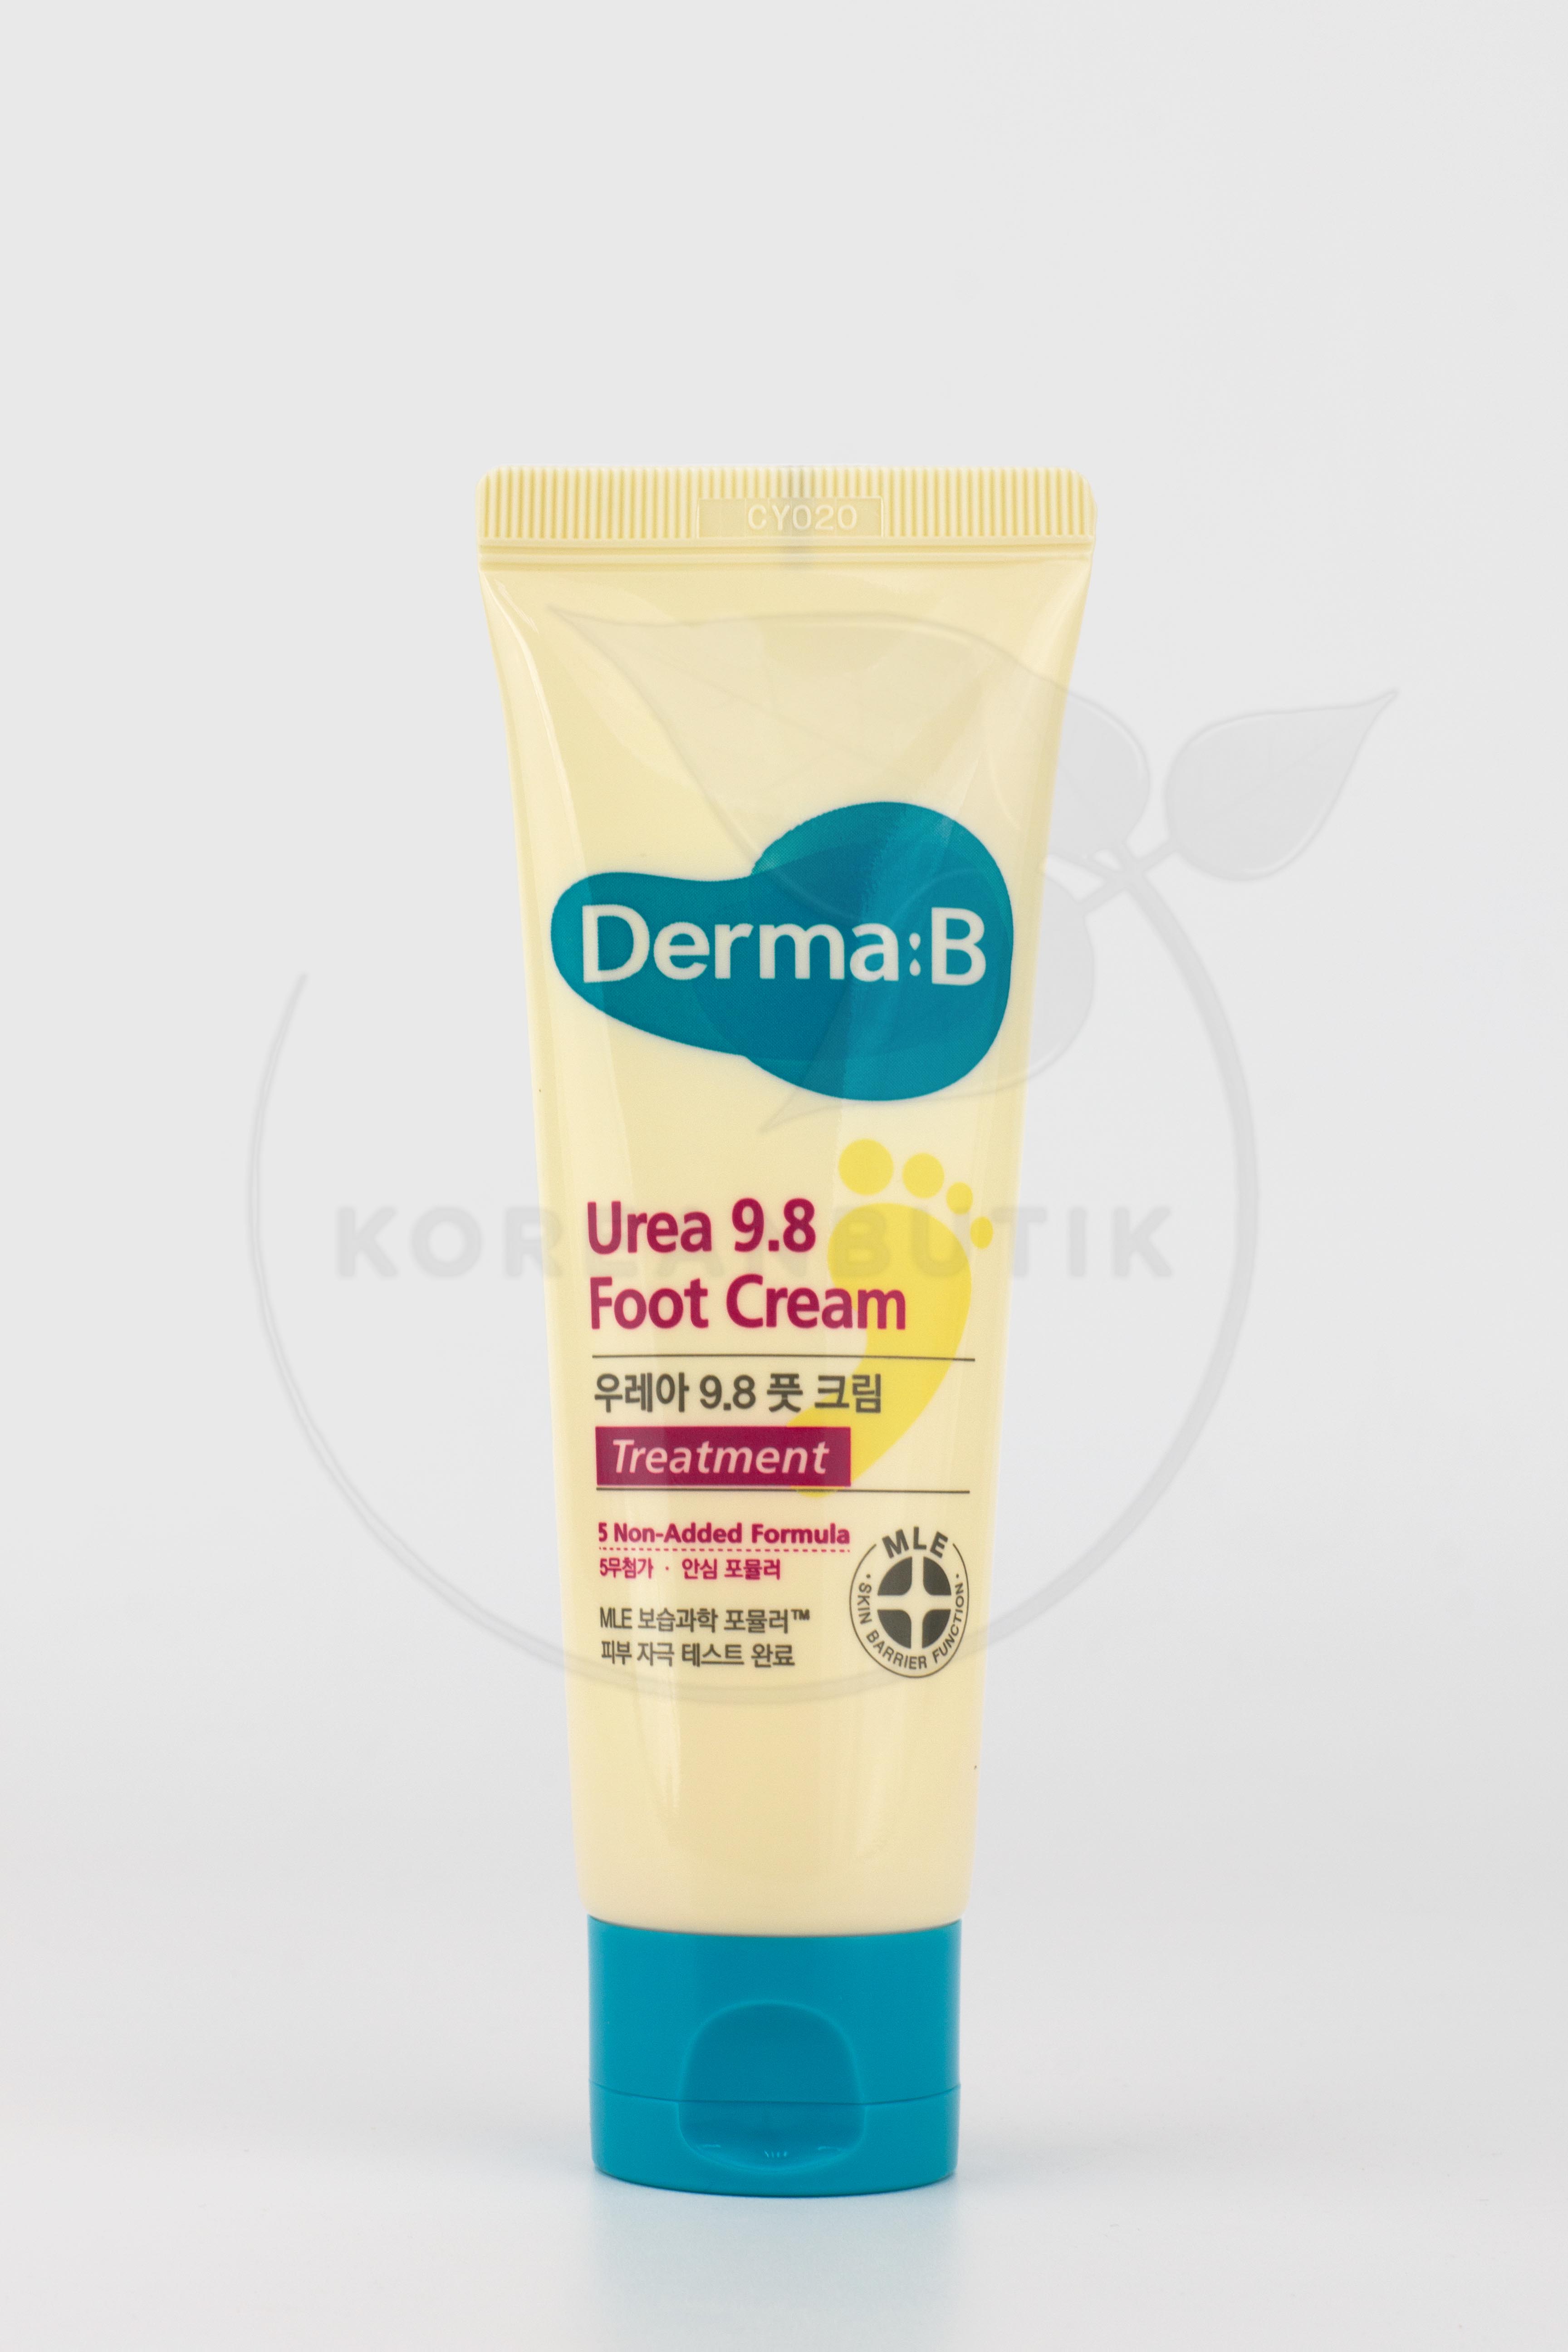  Derma:B Urea 9.8 Foot Cream 80 ml ..